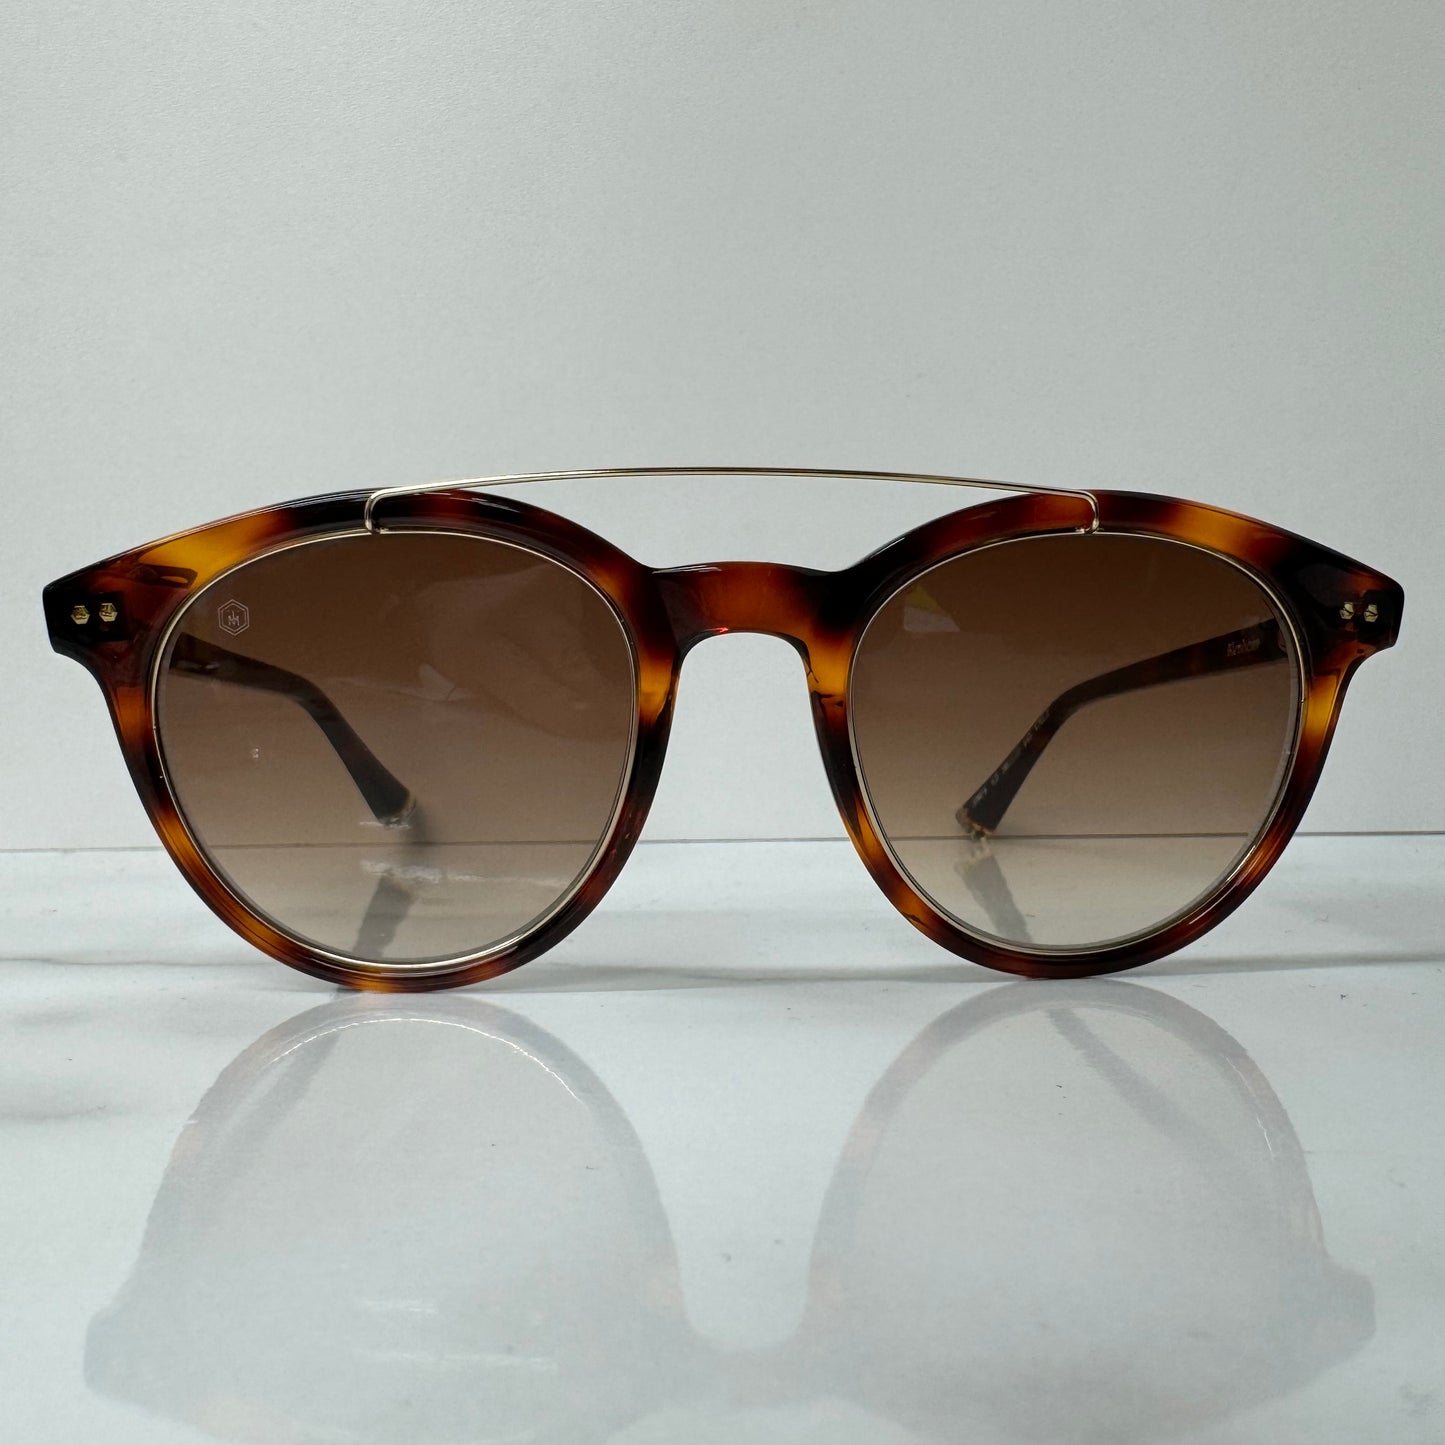 Taylor Morris Blenheim Brown Sunglasses - 32071 C2